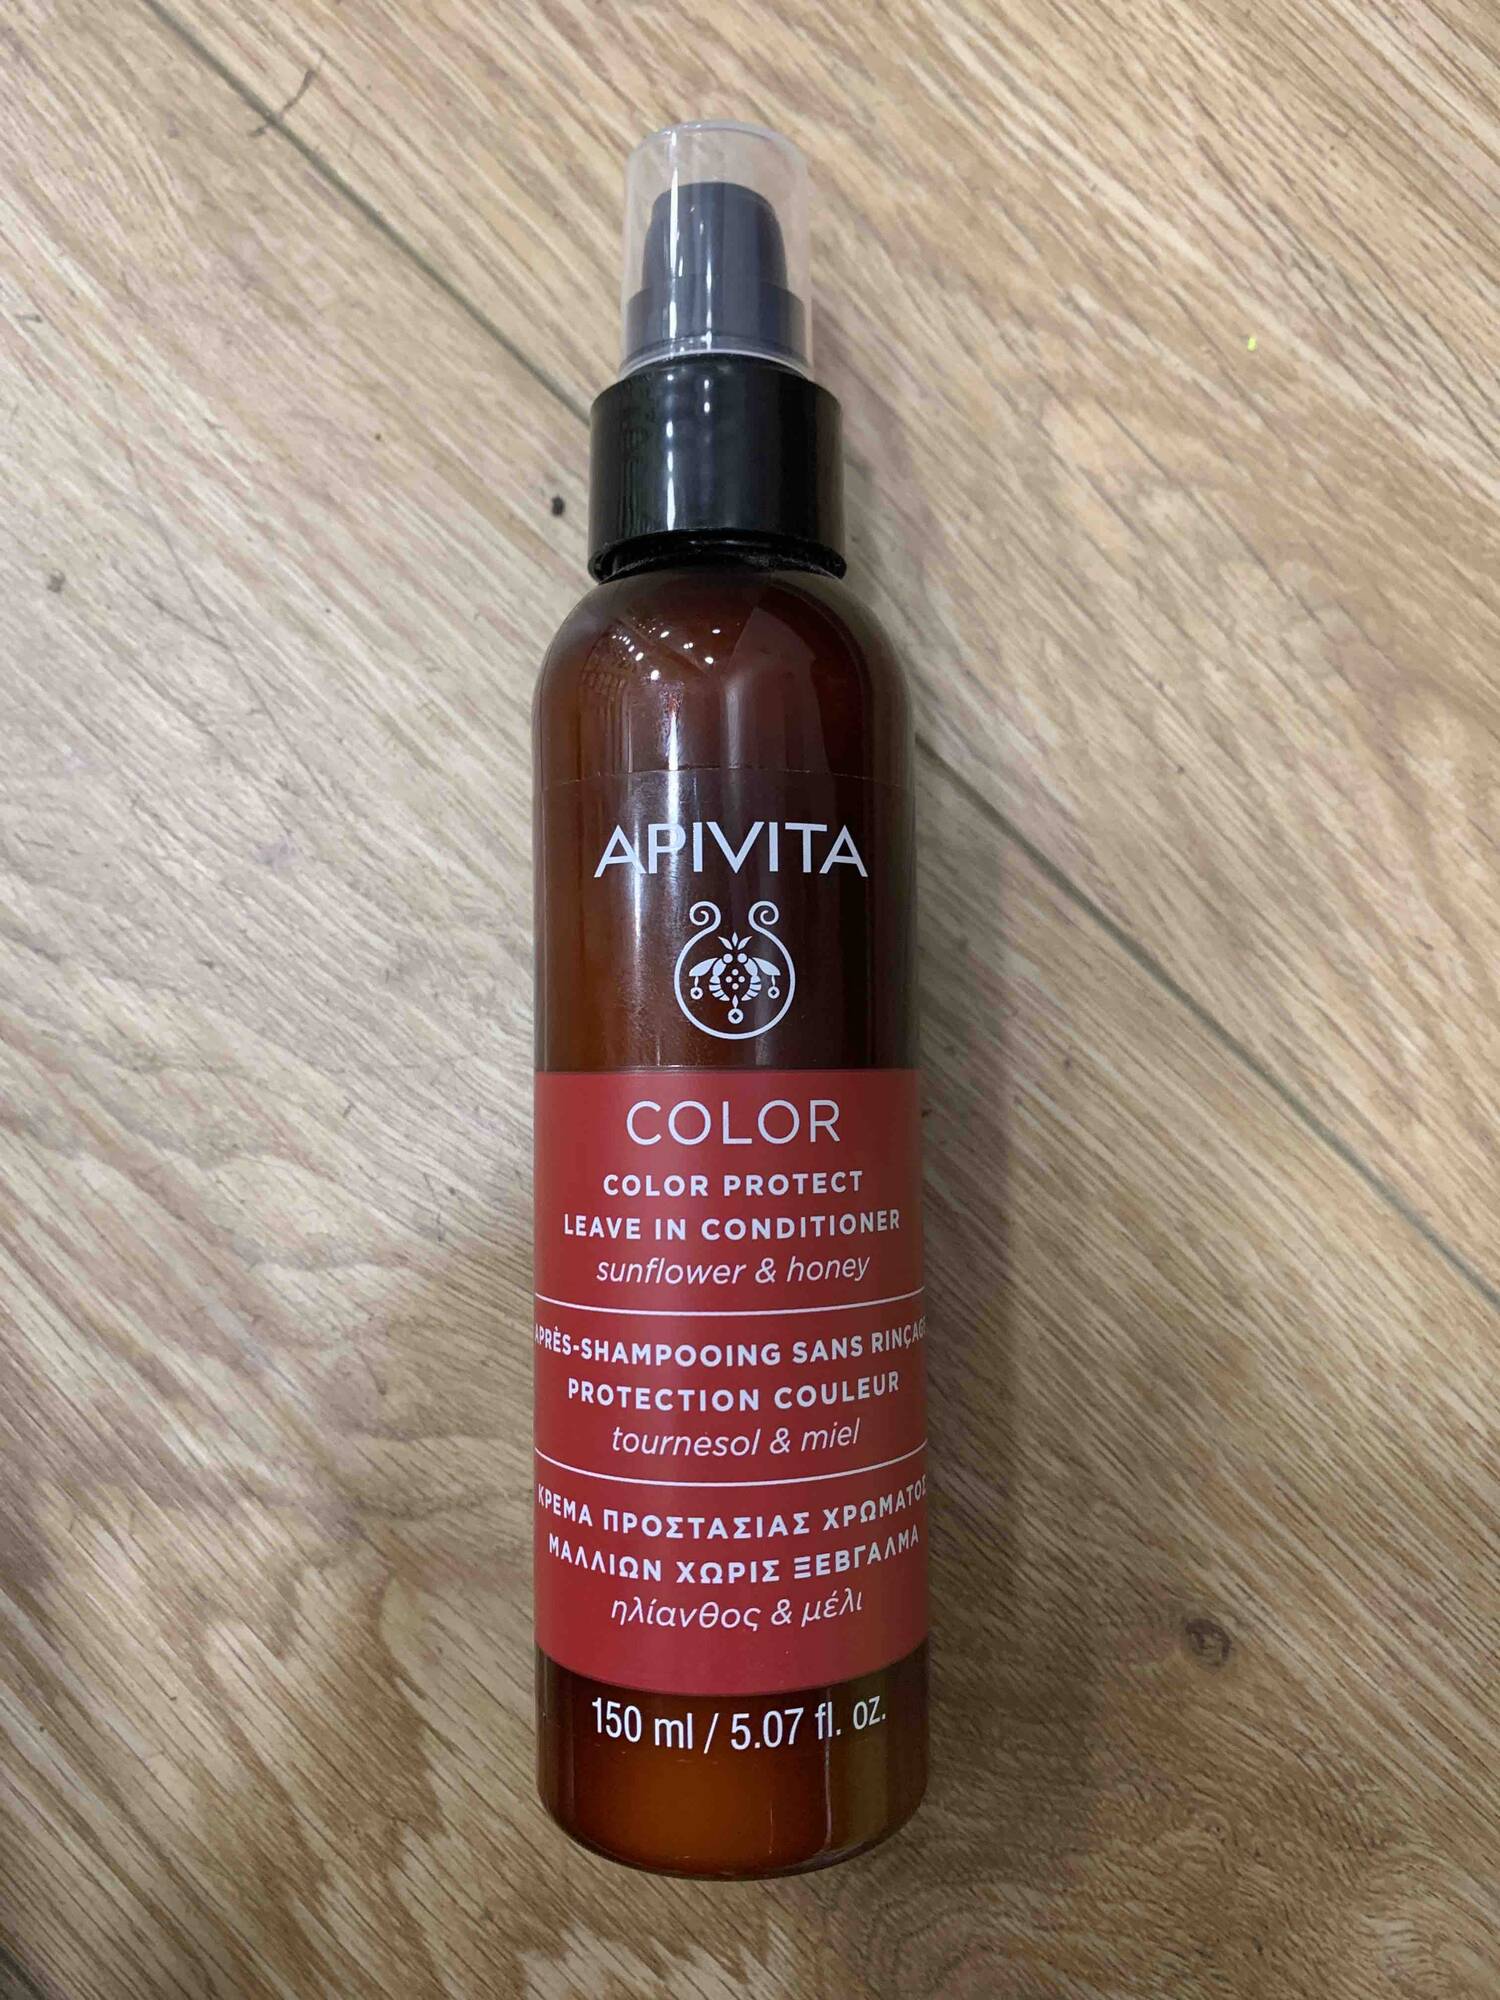 APIVITA - Color protect - Après-shampooing sans rinçage protection couleur